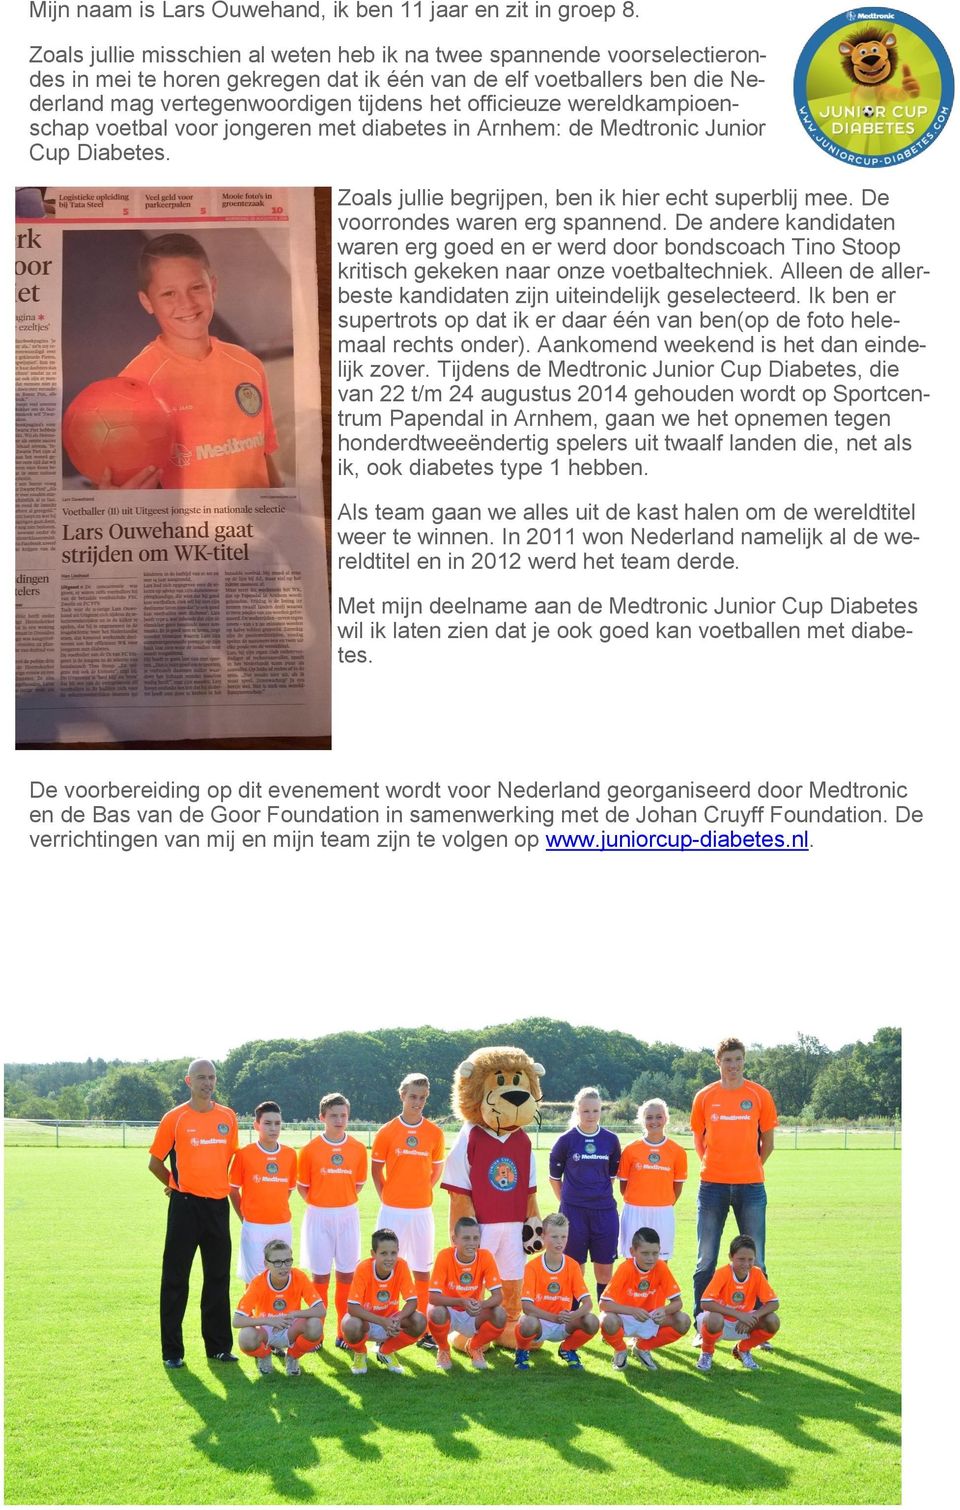 wereldkampioenschap voetbal voor jongeren met diabetes in Arnhem: de Medtronic Junior Cup Diabetes. Zoals jullie begrijpen, ben ik hier echt superblij mee. De voorrondes waren erg spannend.